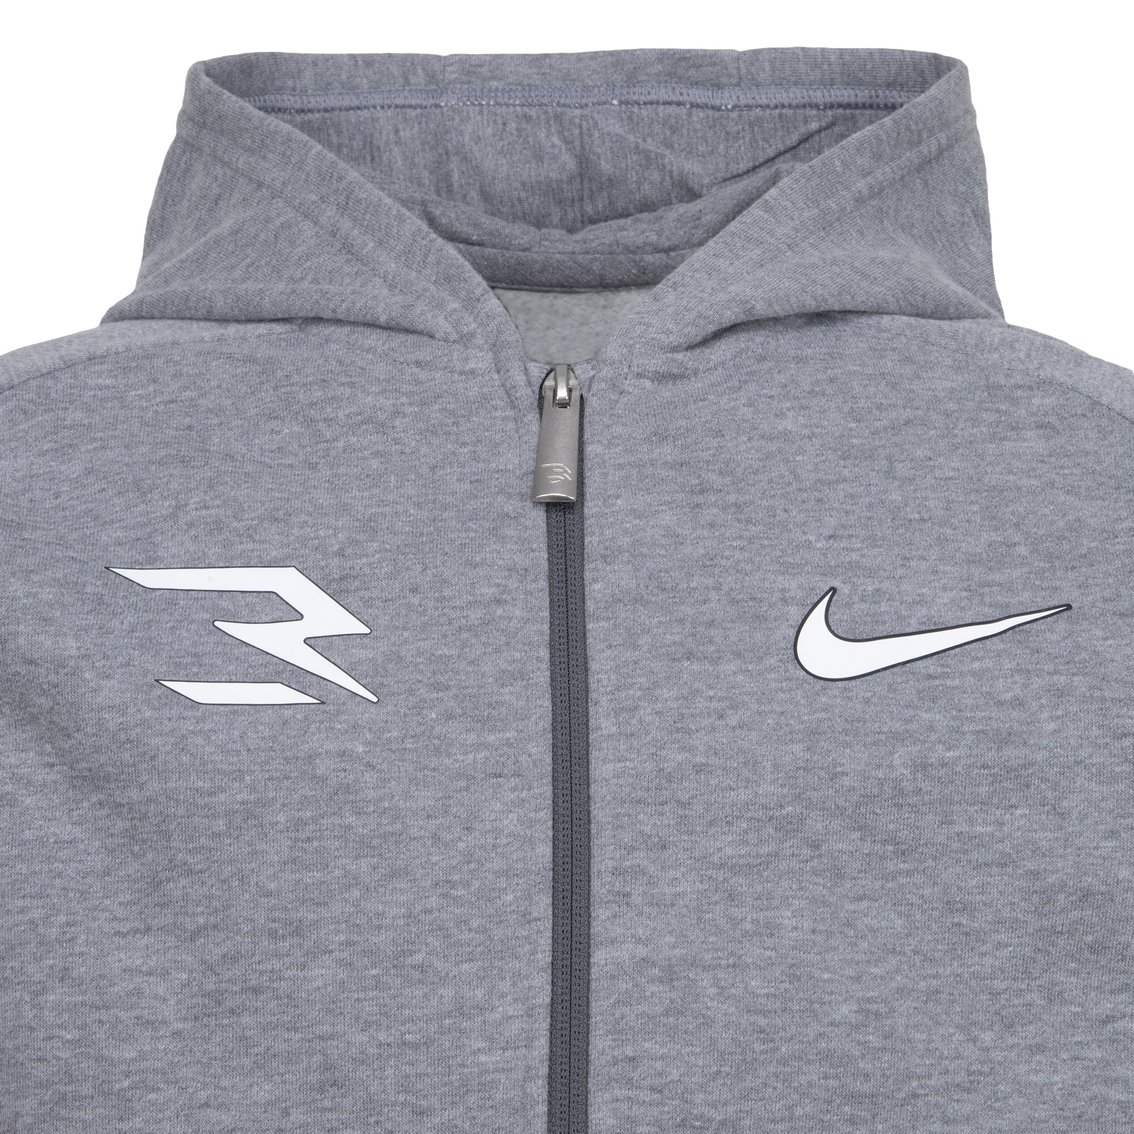 3brand By Russell Wilson Nike Icon Boys Full Zip Hoodie | Boys 8-20 ...